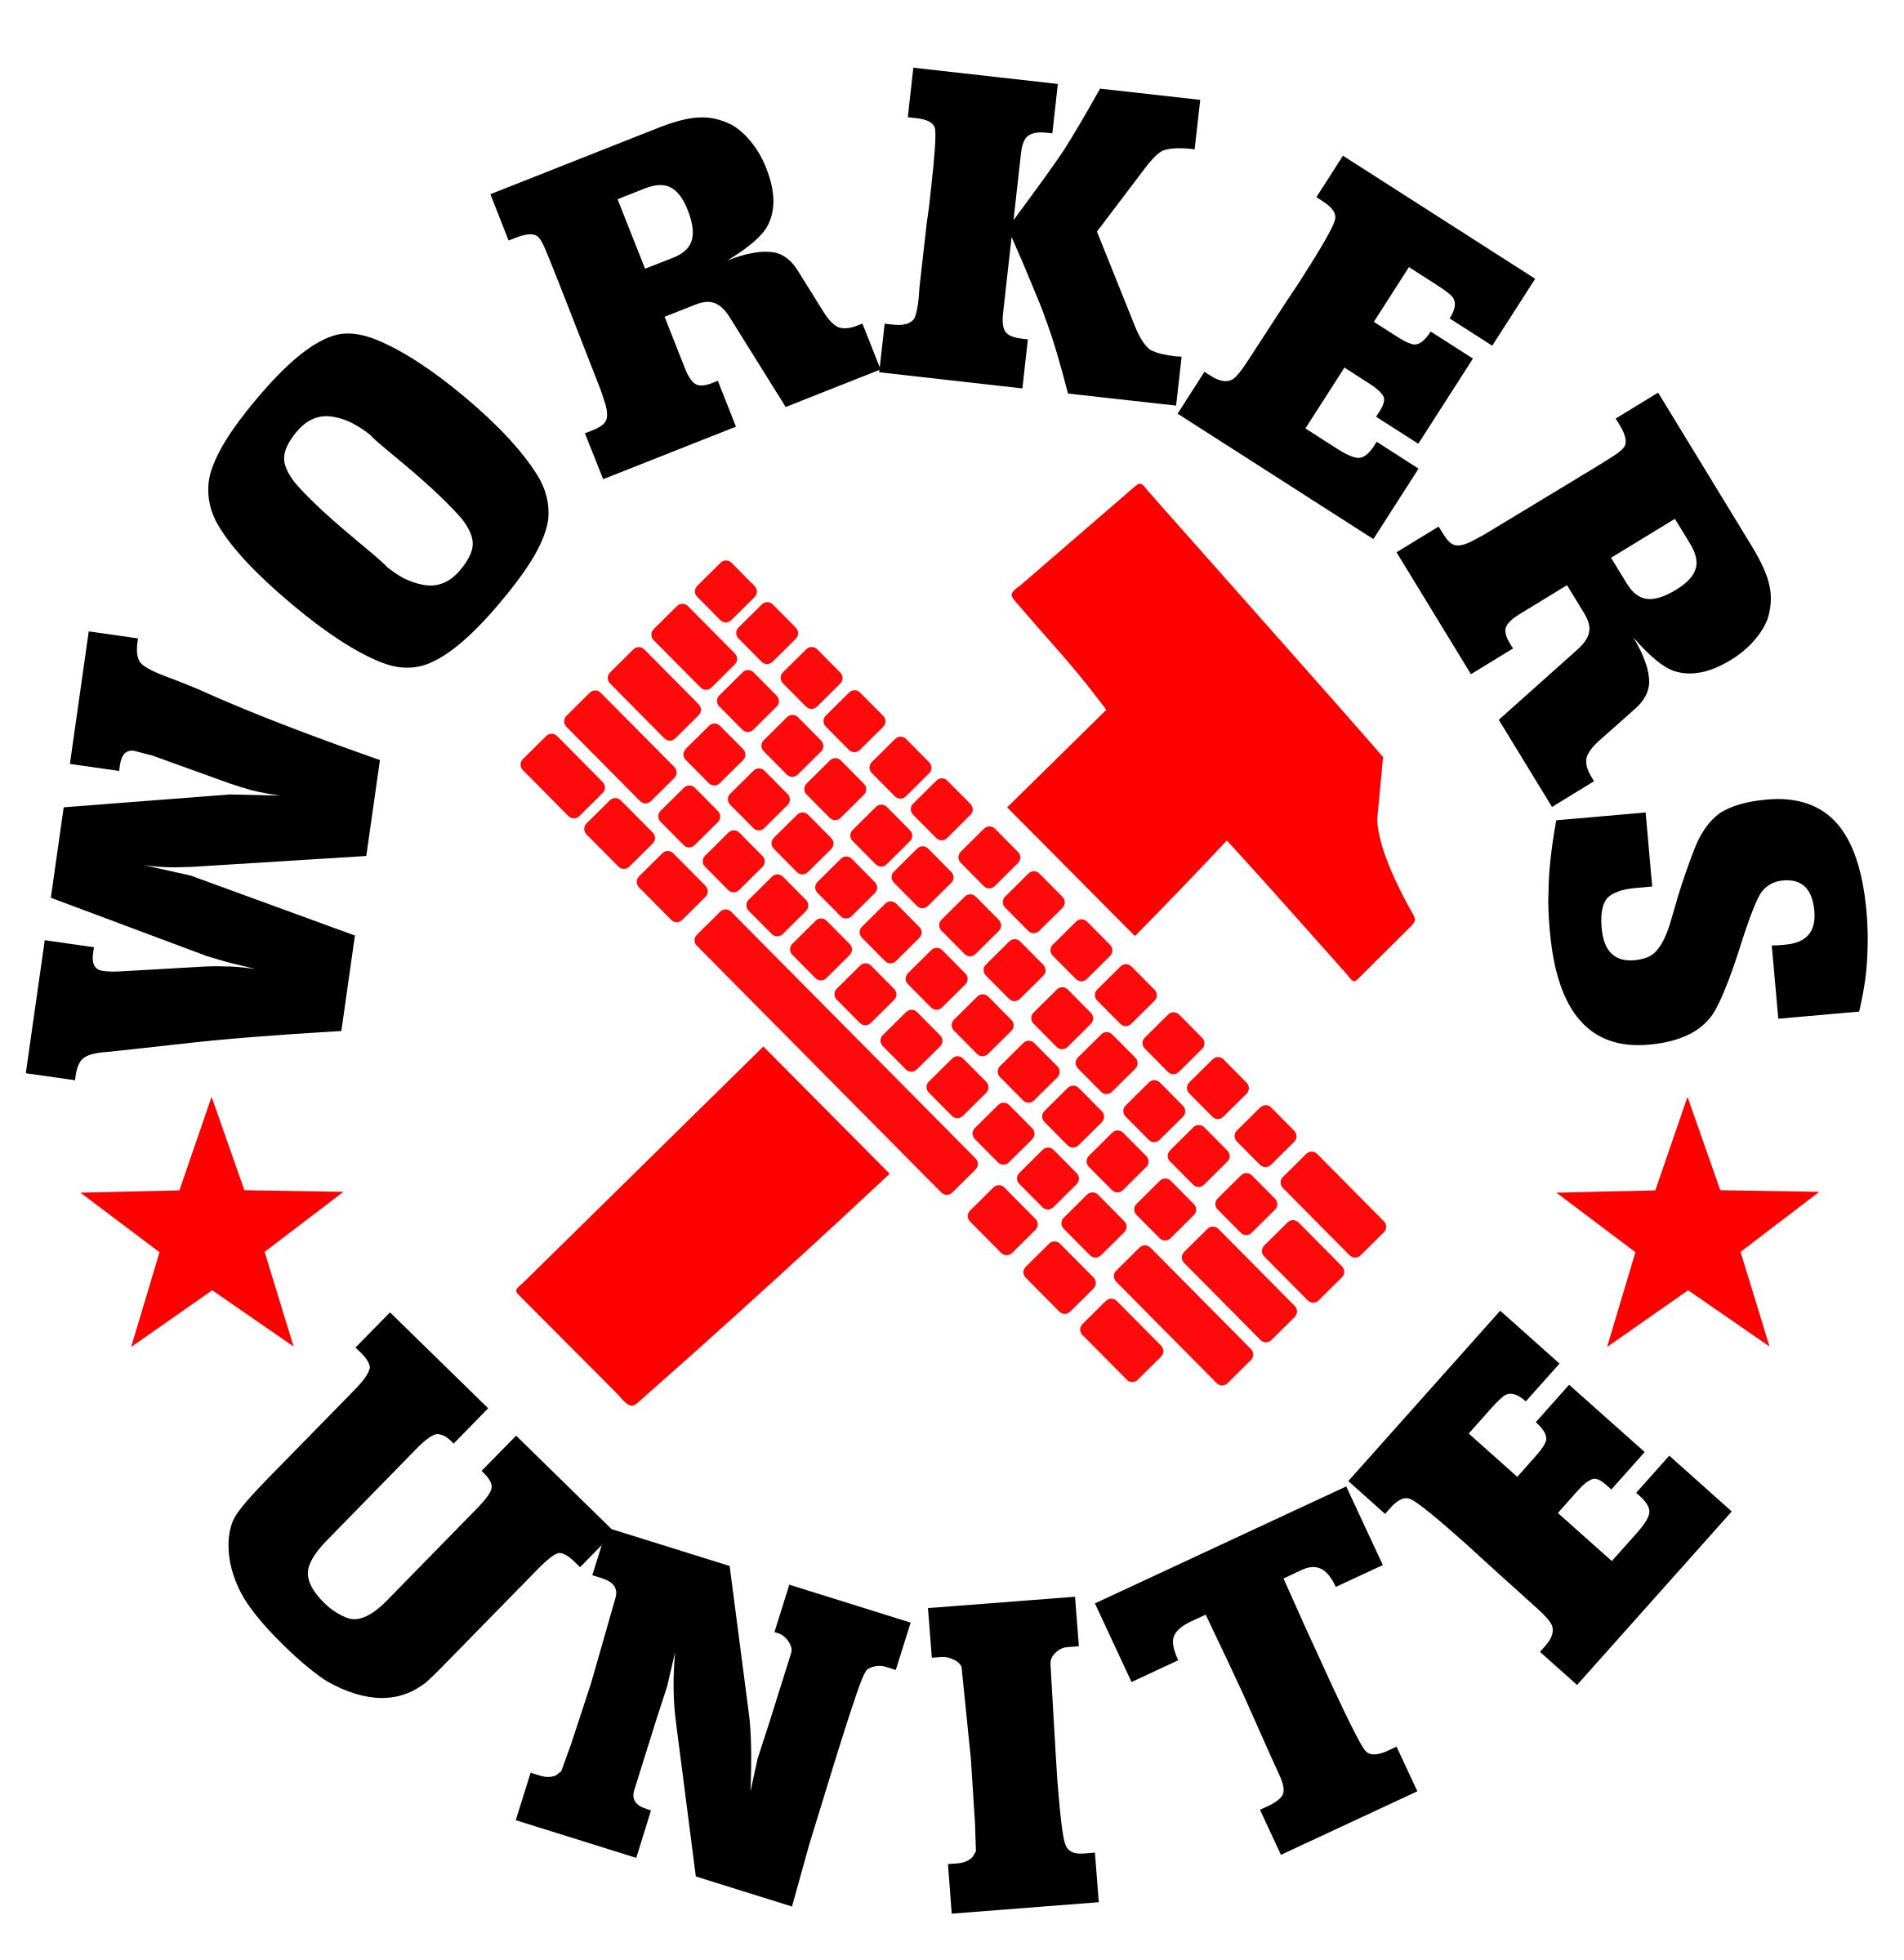 Workers of the world, unite! el pueblo unido jamas sera vencido! hammer and keyboard icons